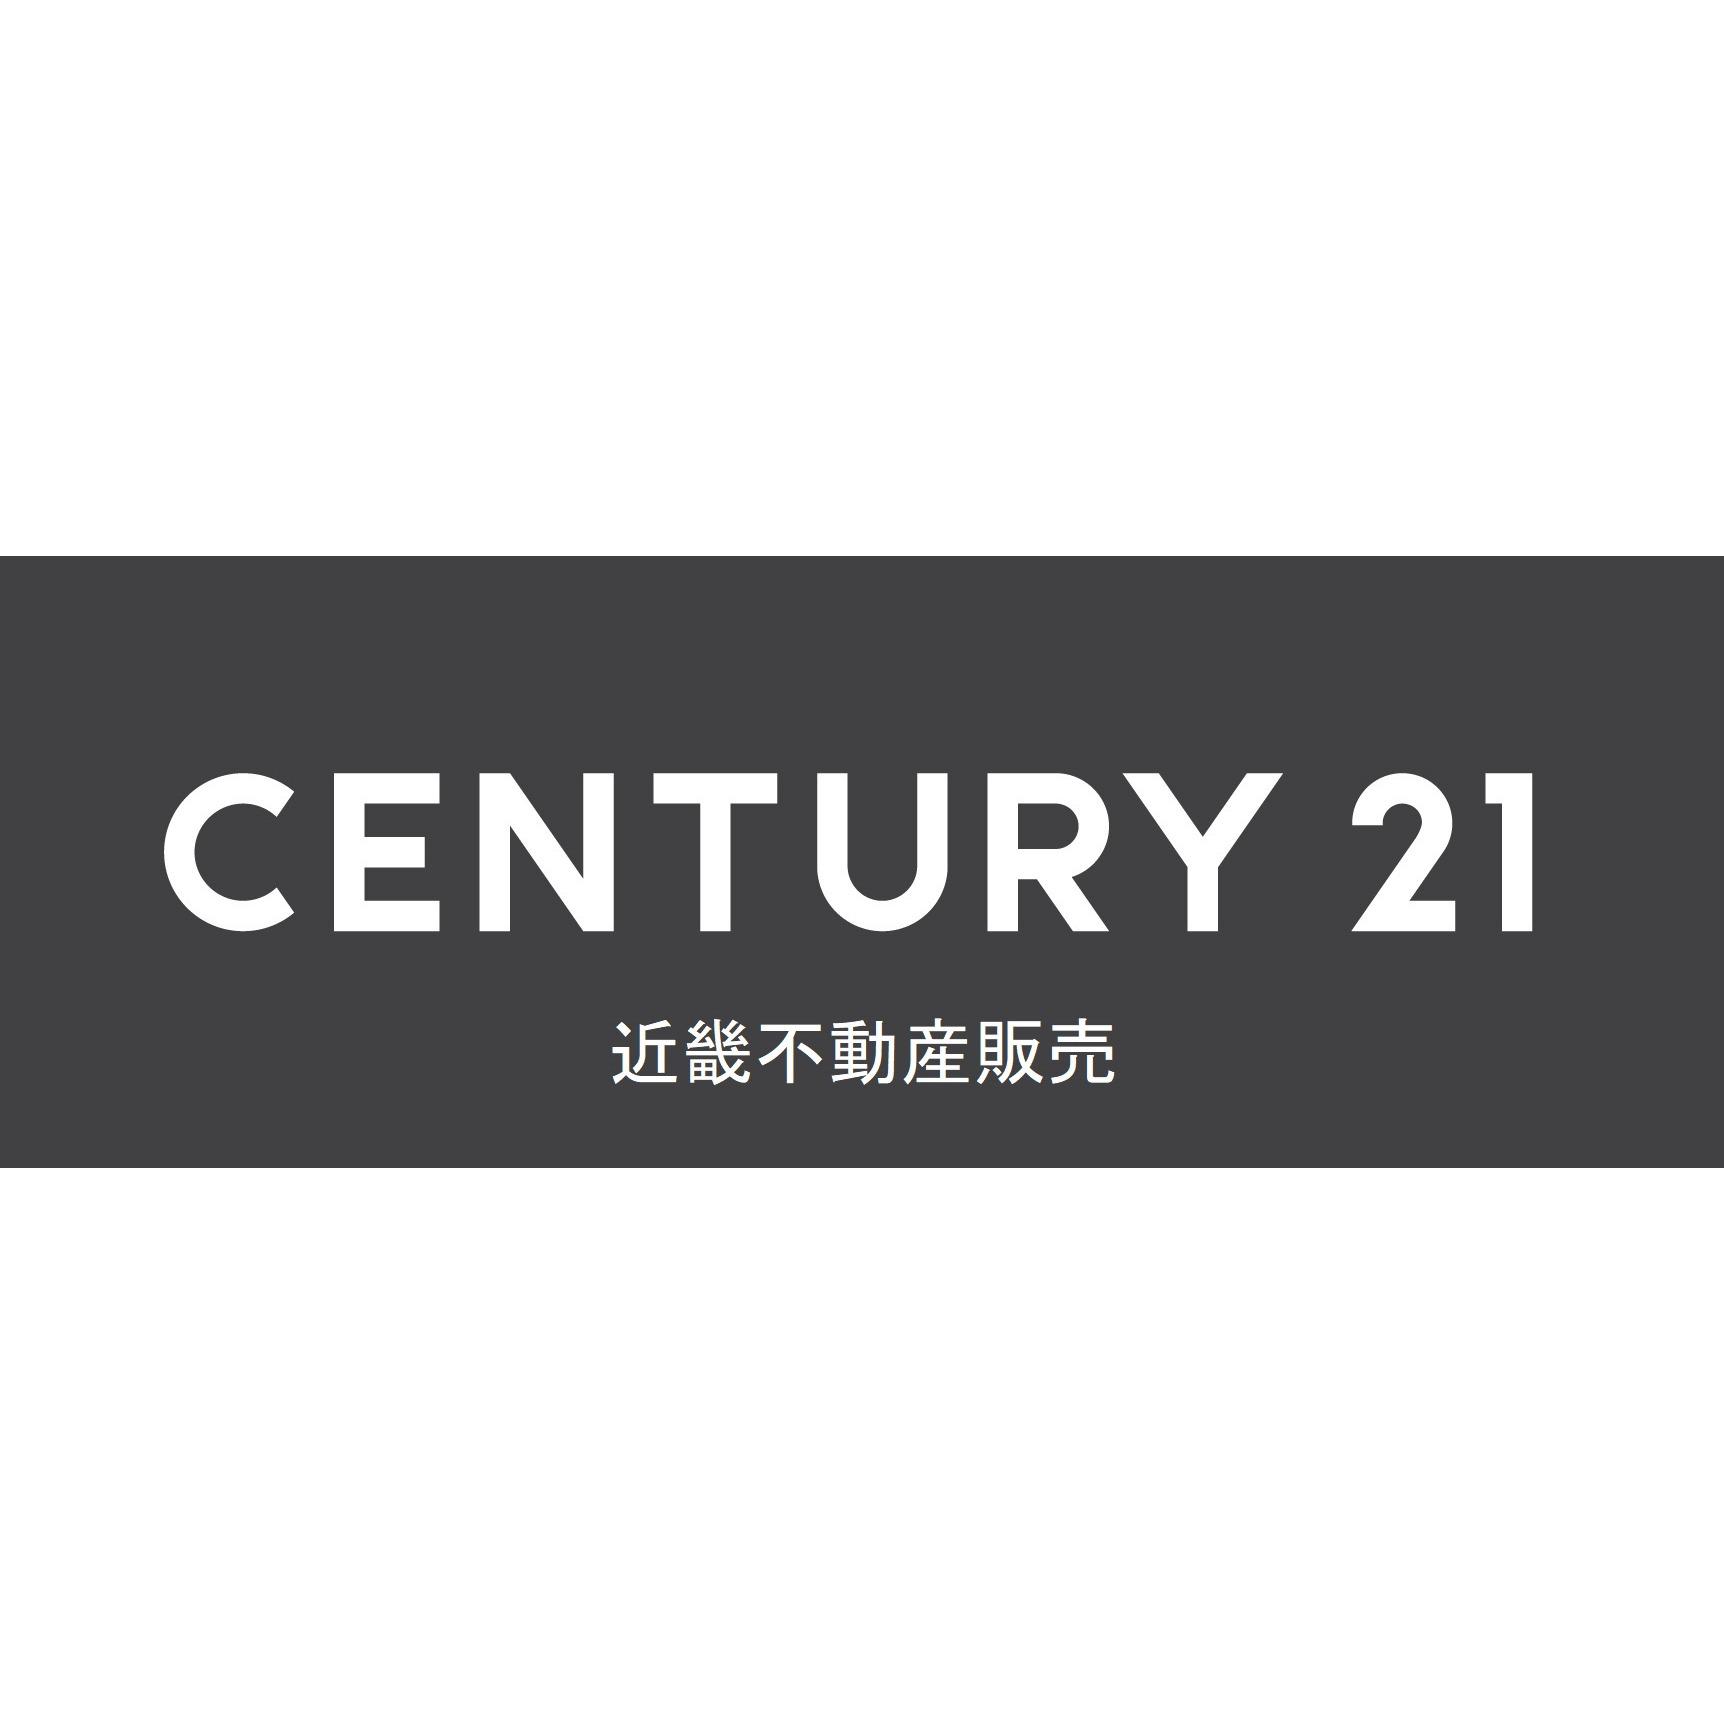 センチュリー21近畿不動産販売三国ヶ丘店 Logo